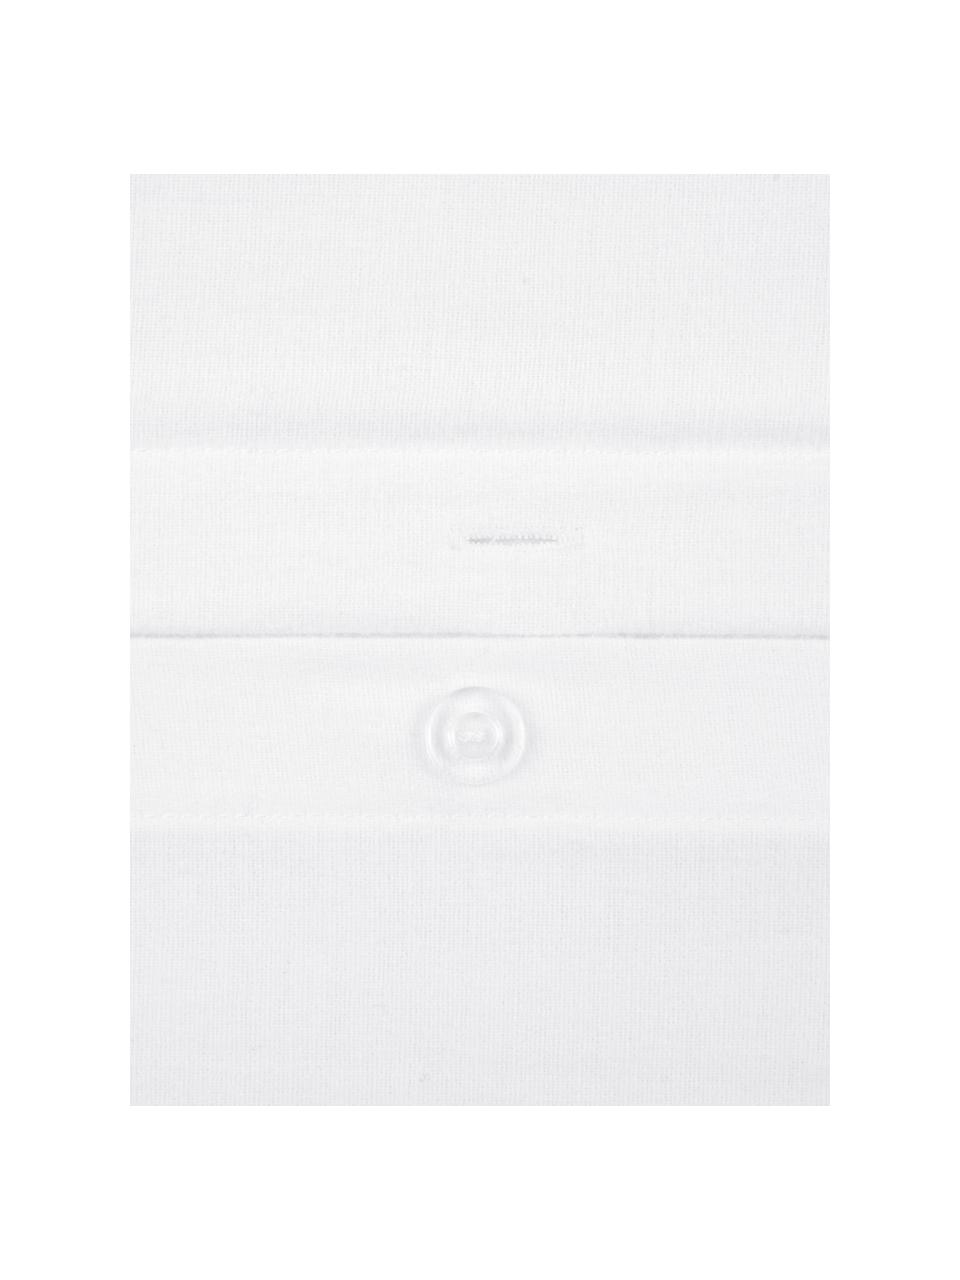 Pościel z flaneli Biba, Biały, 135 x 200 cm + 1 poduszka 80 x 80 cm